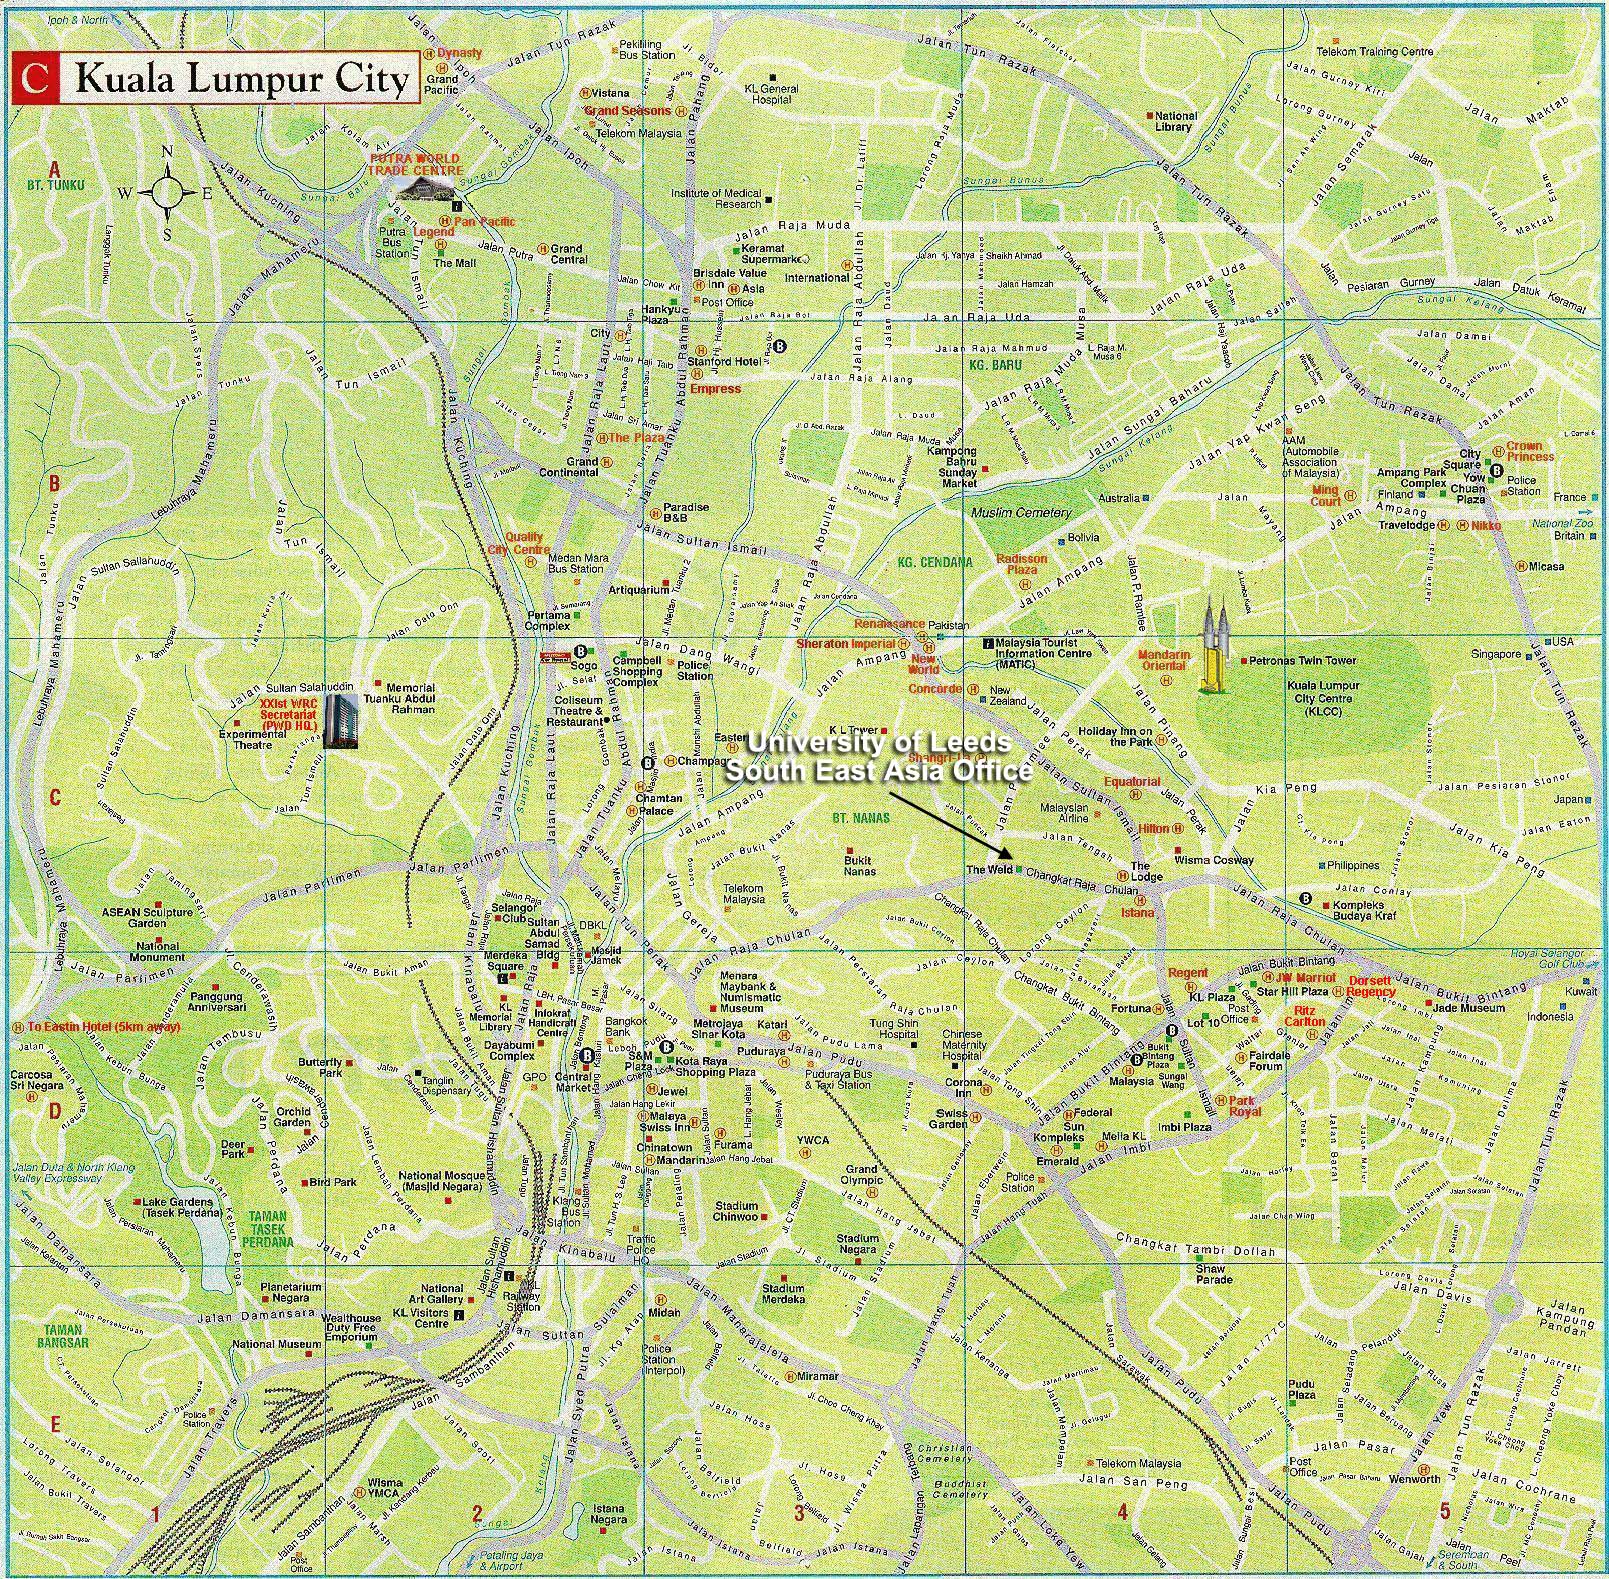 Kuala Lumpur City Tourist Map - Kuala Lumpur City Malaysia • mappery